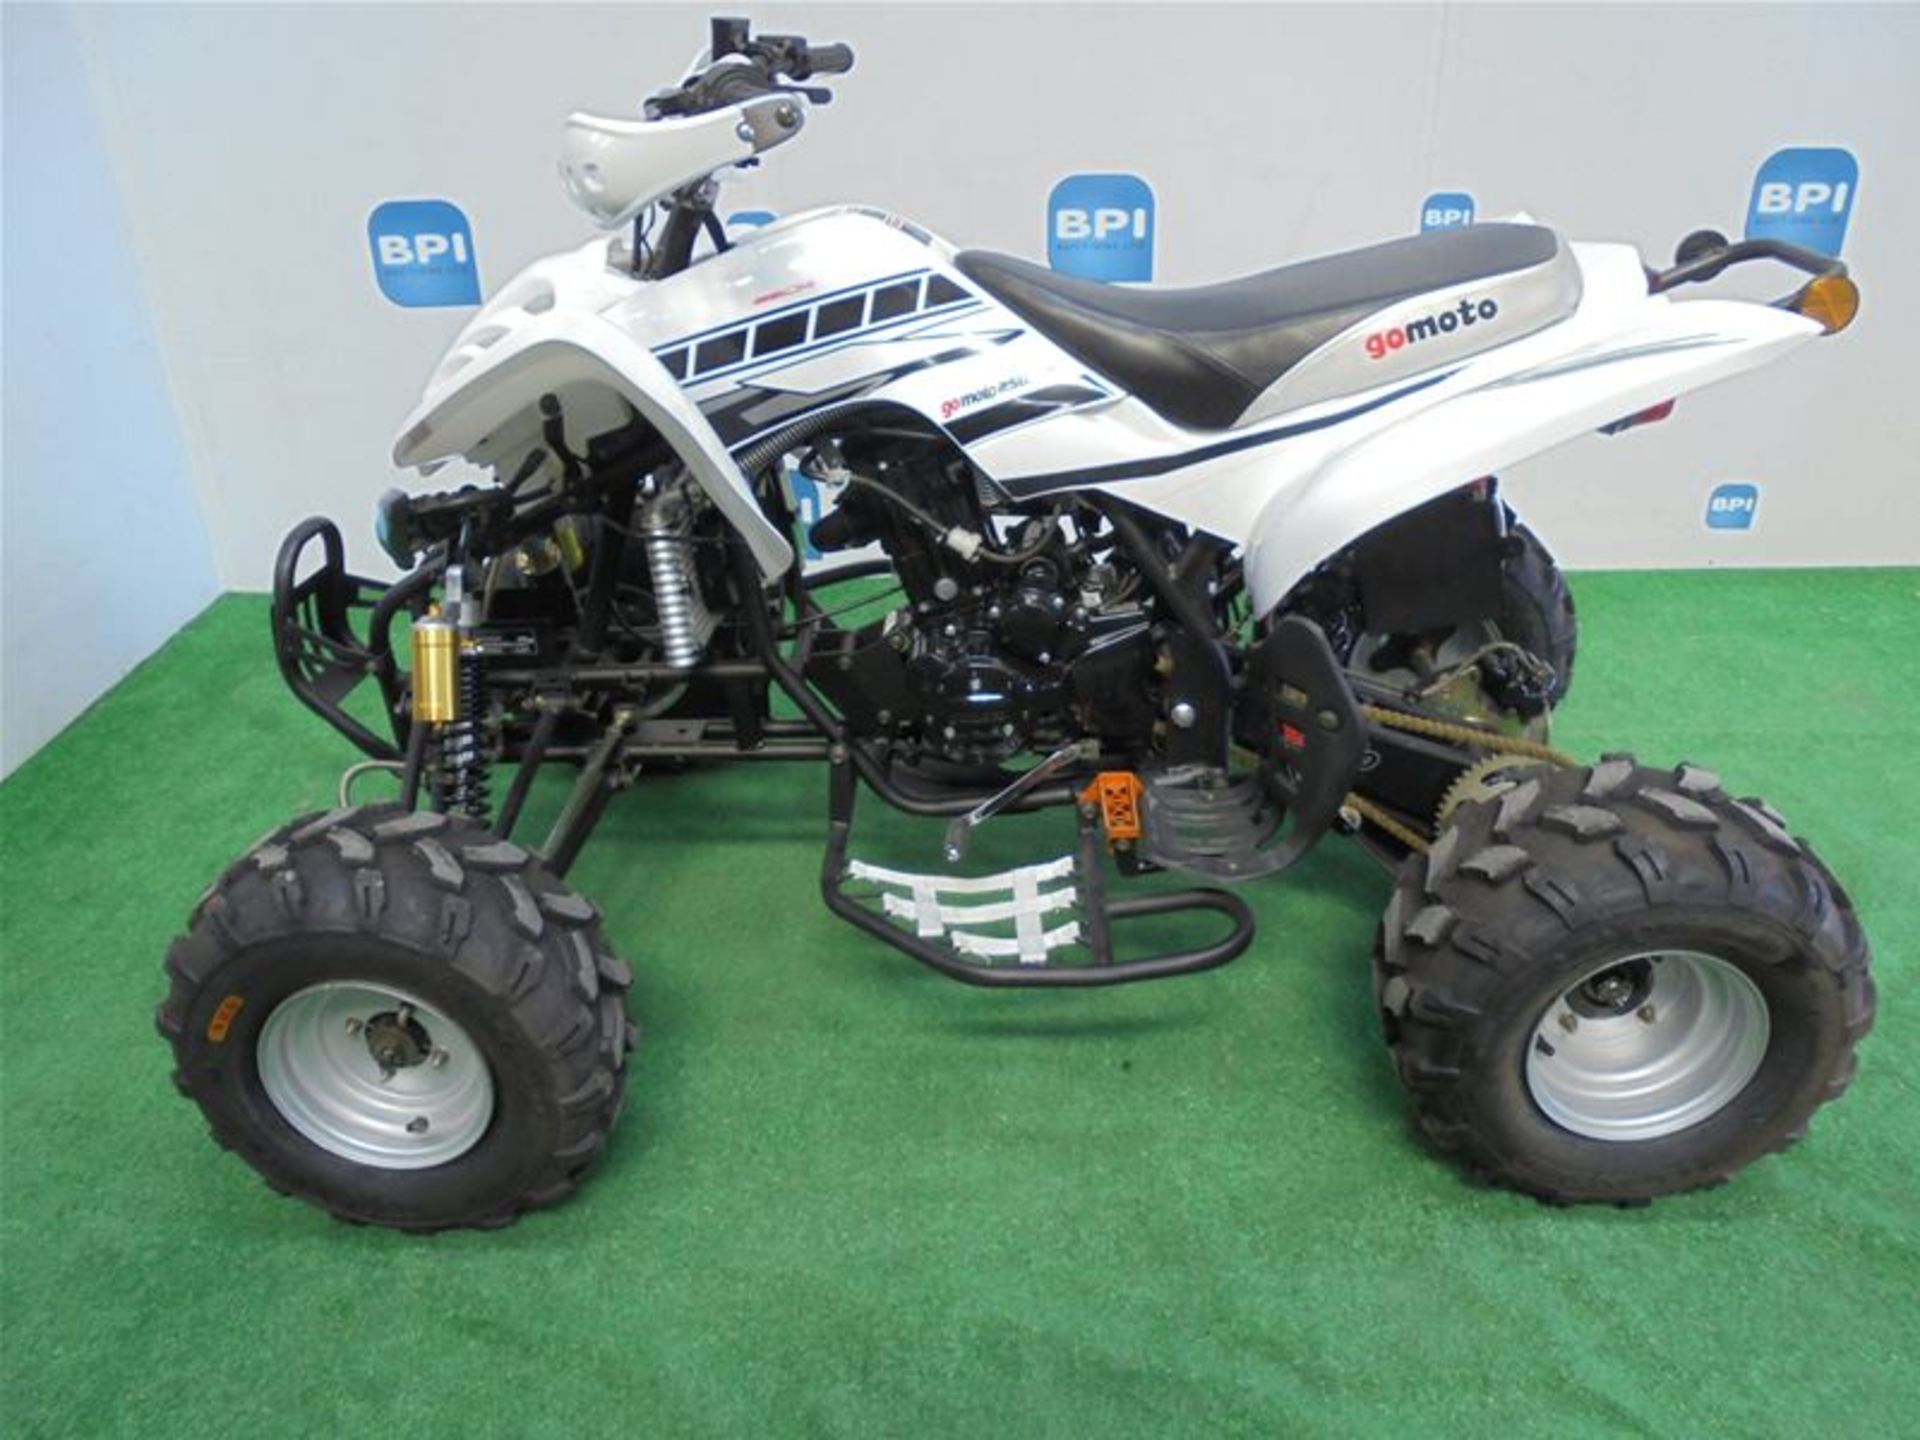 Gomoto 250cc ATV